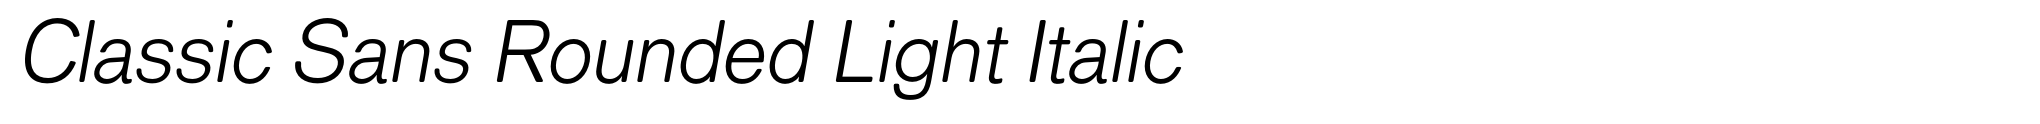 Classic Sans Rounded Light Italic image